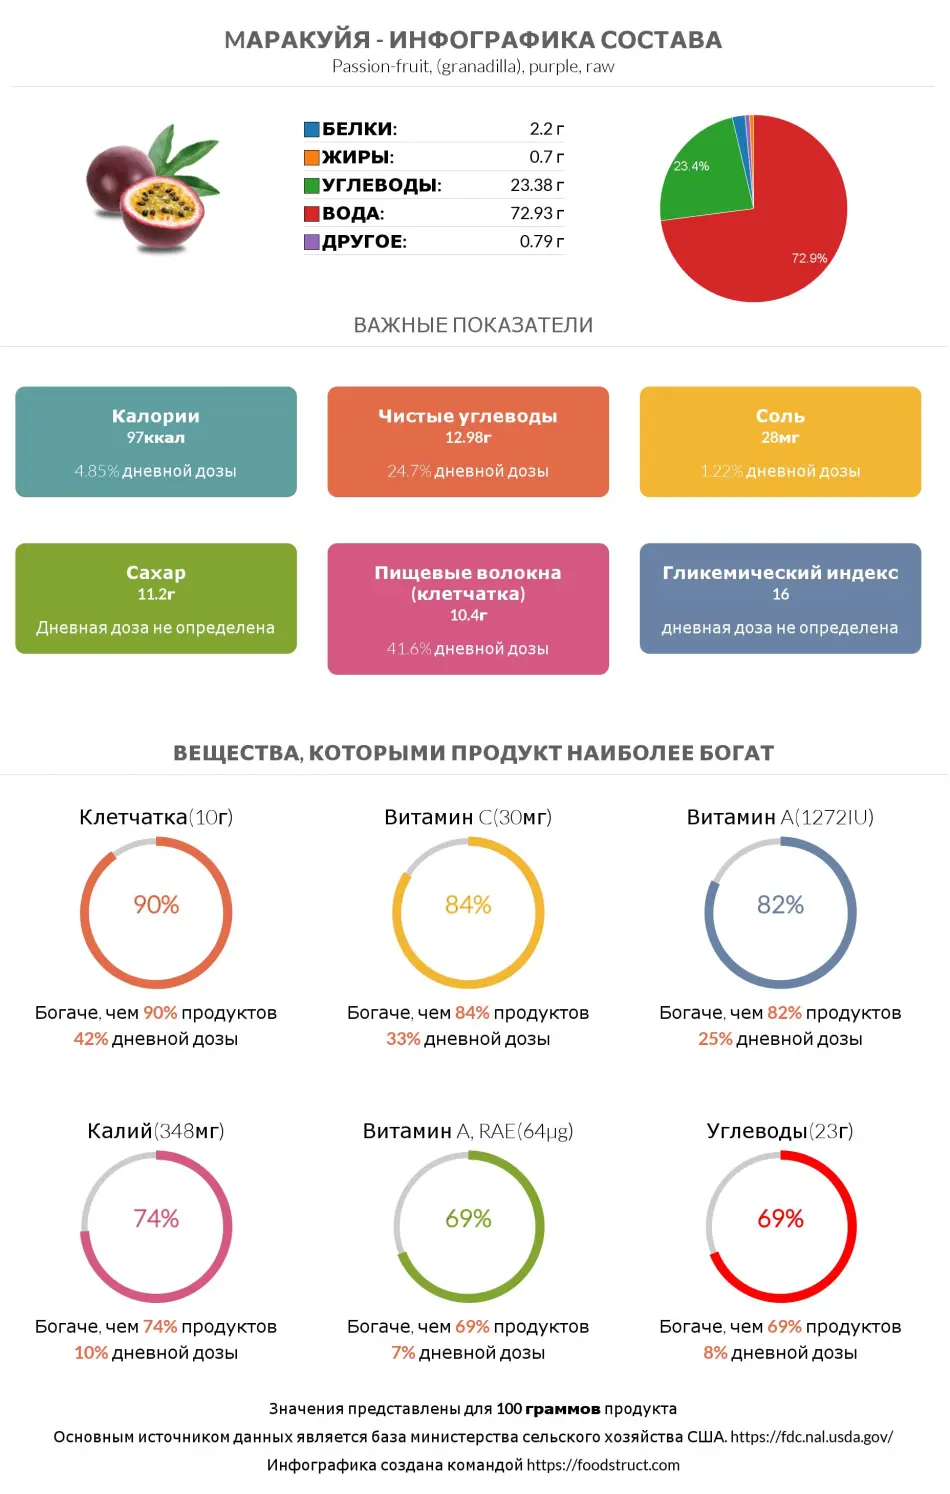 Инфографика состава и питательности для продукта Mаракуйя